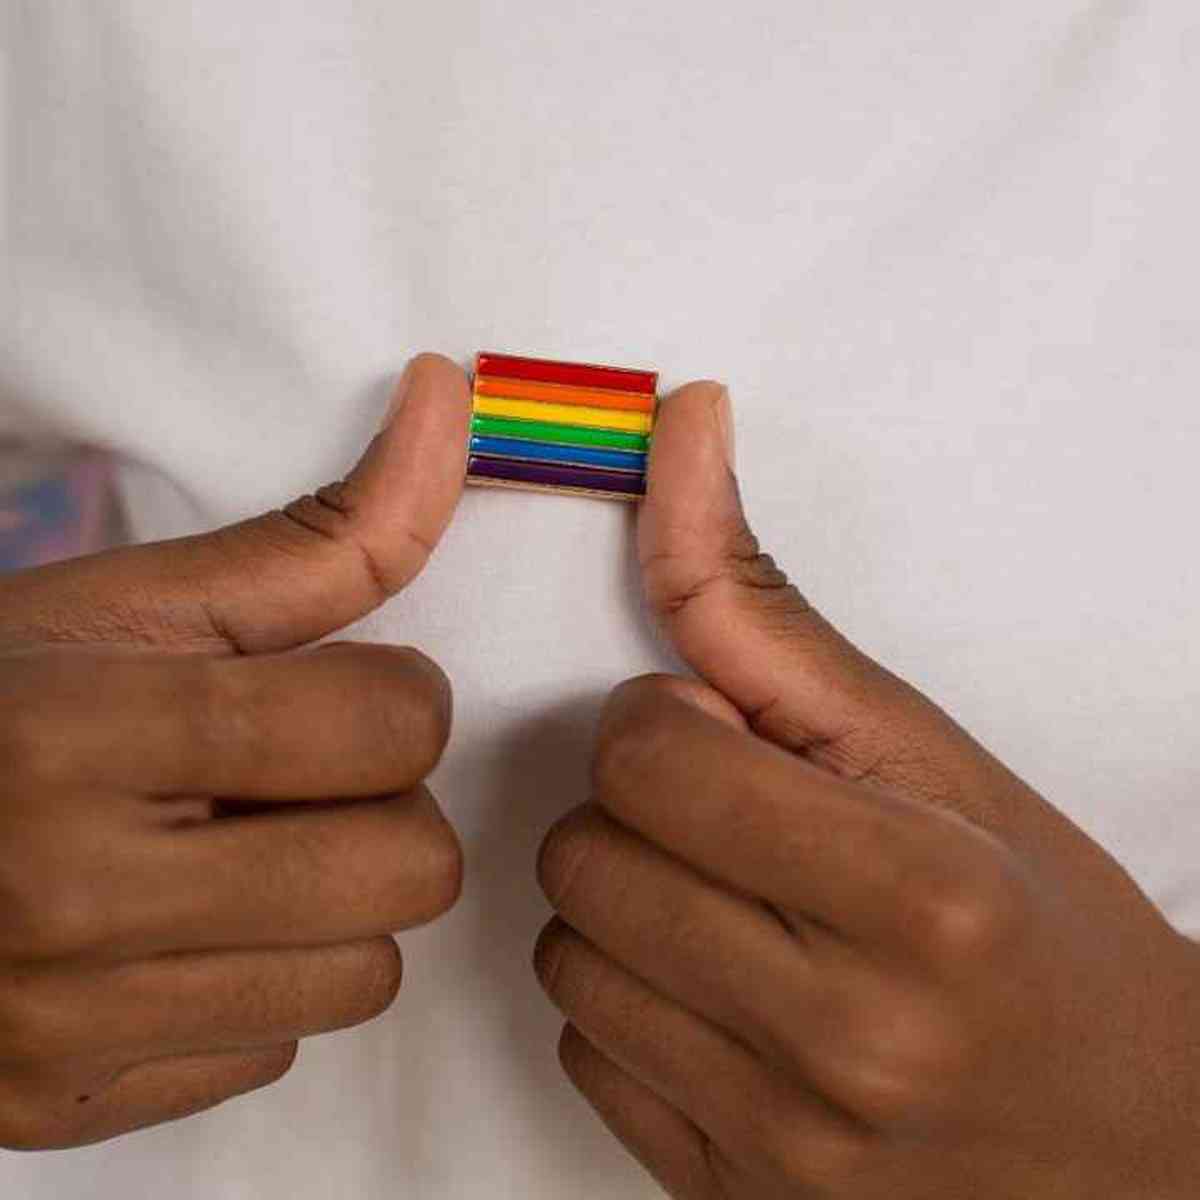 O que você sabe sobre a população LGBT?